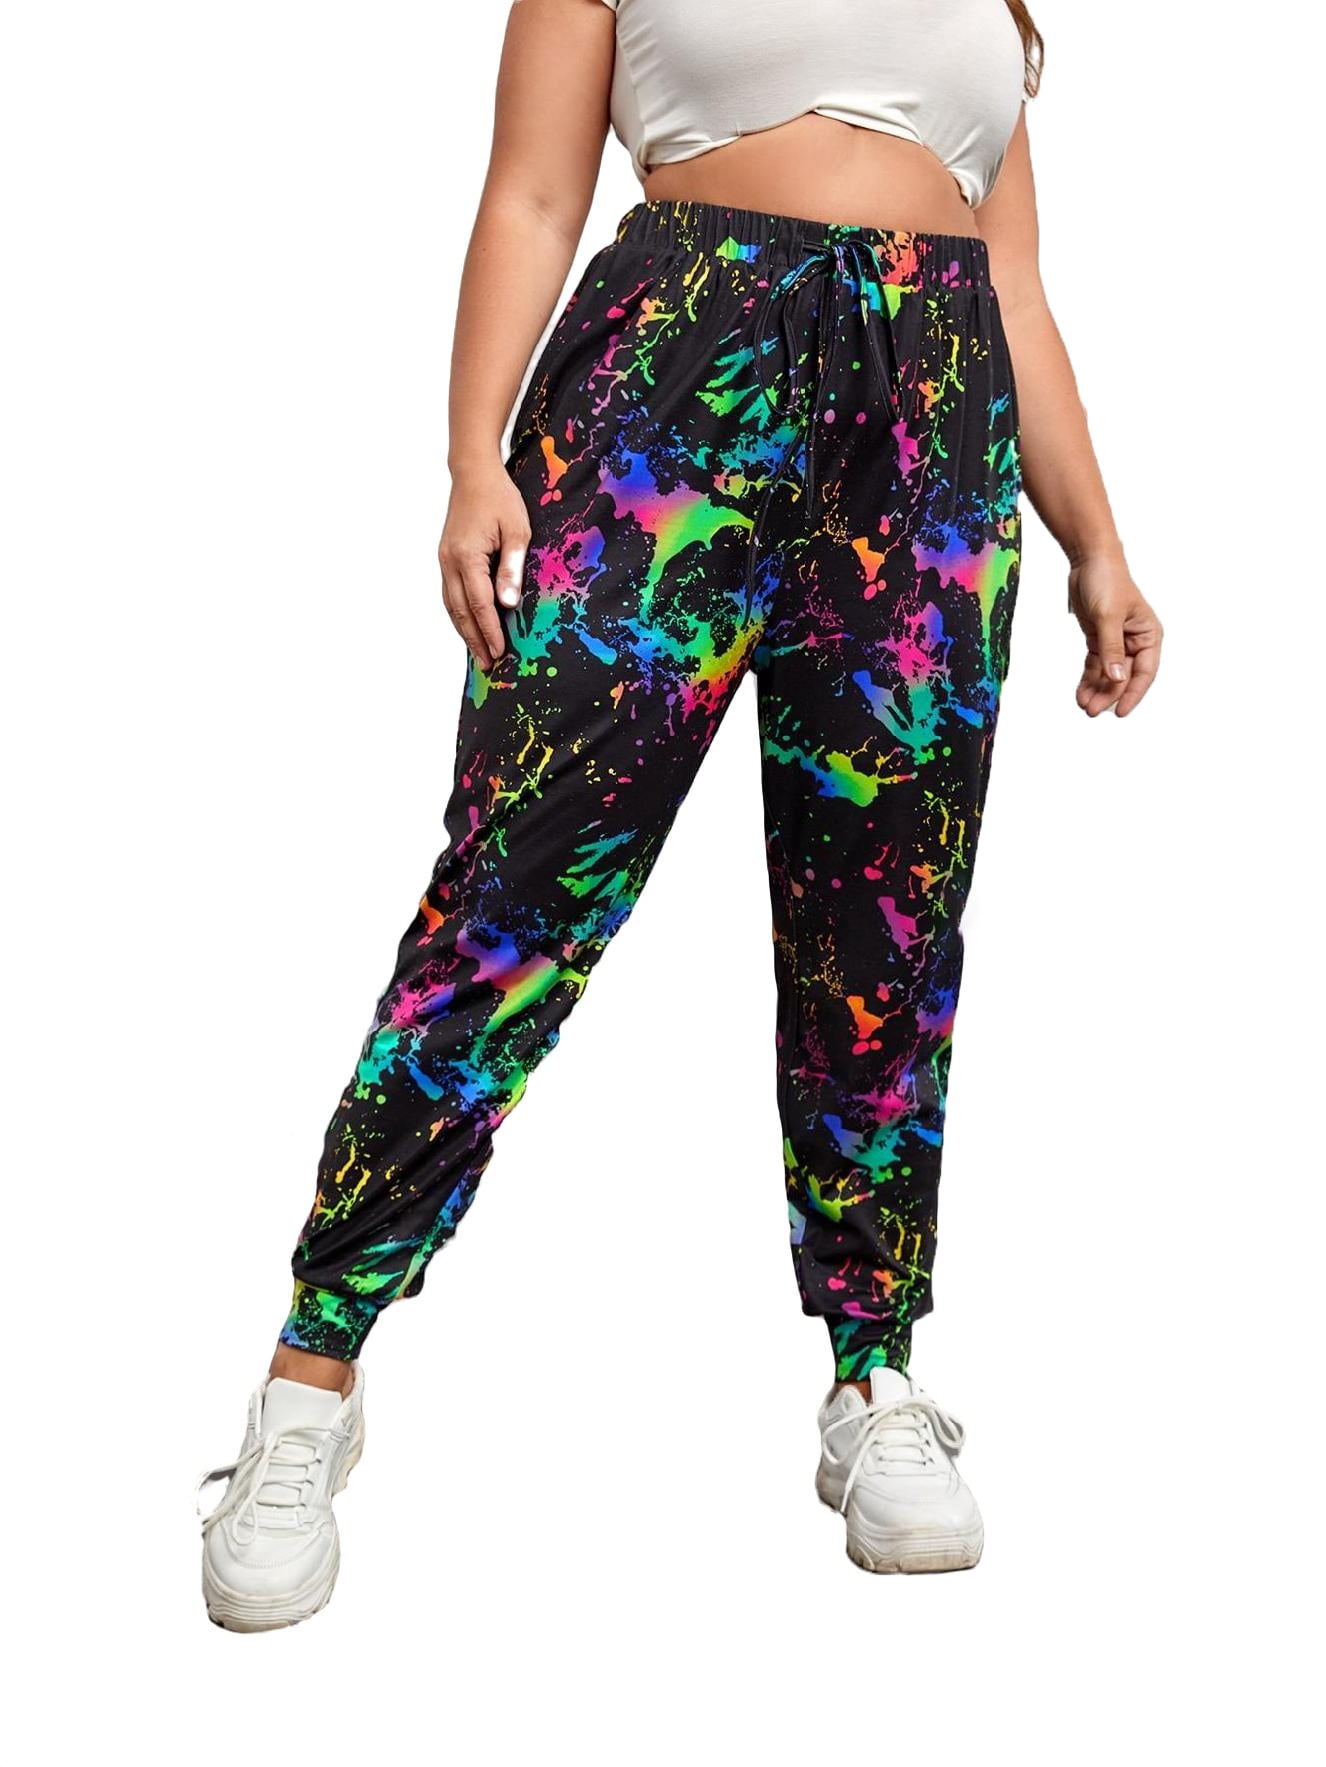 Multicolor Plus Size Sweatpants (Women's) - Walmart.com